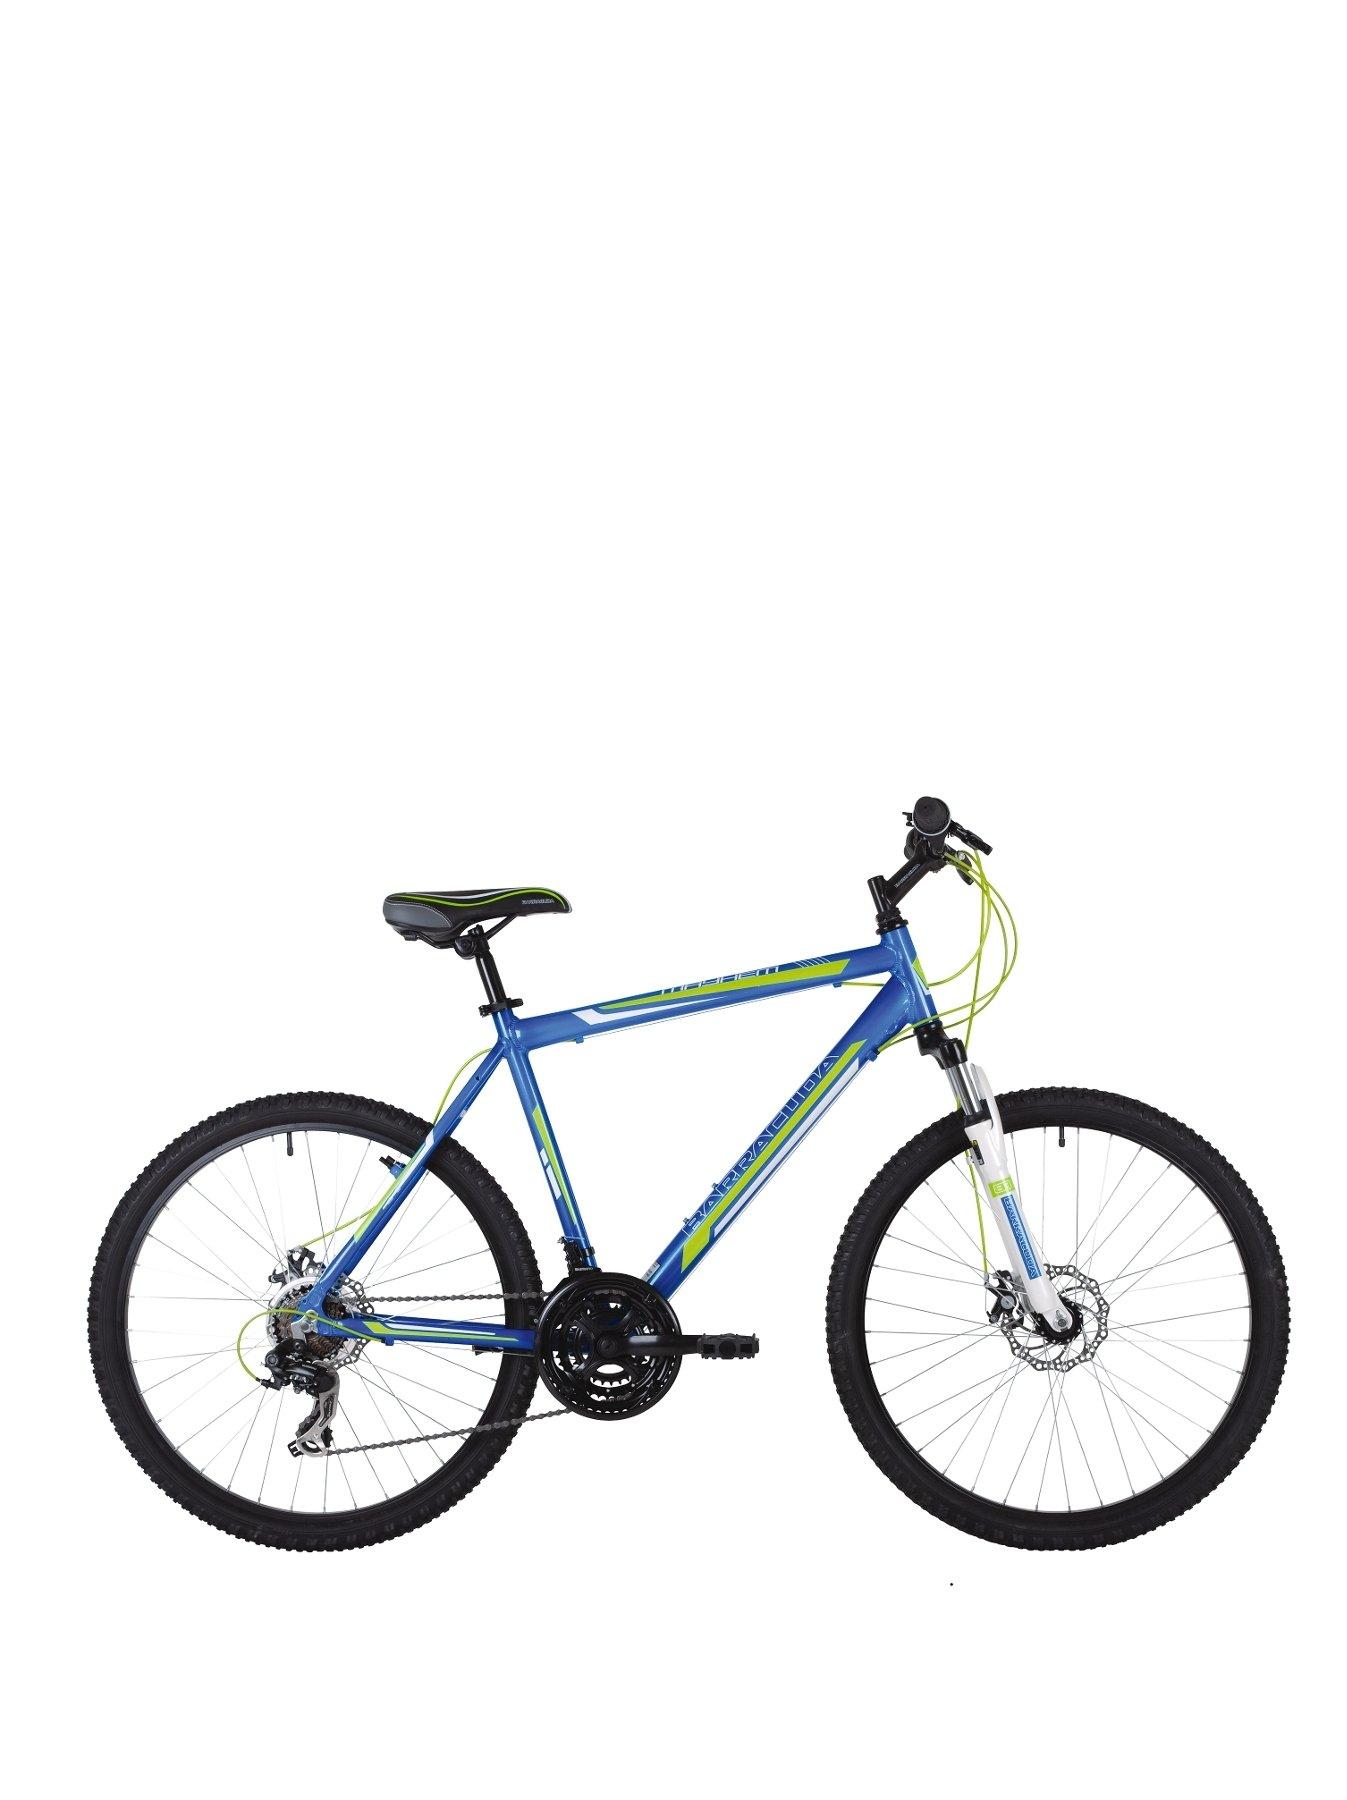 20 inch frame mountain bike